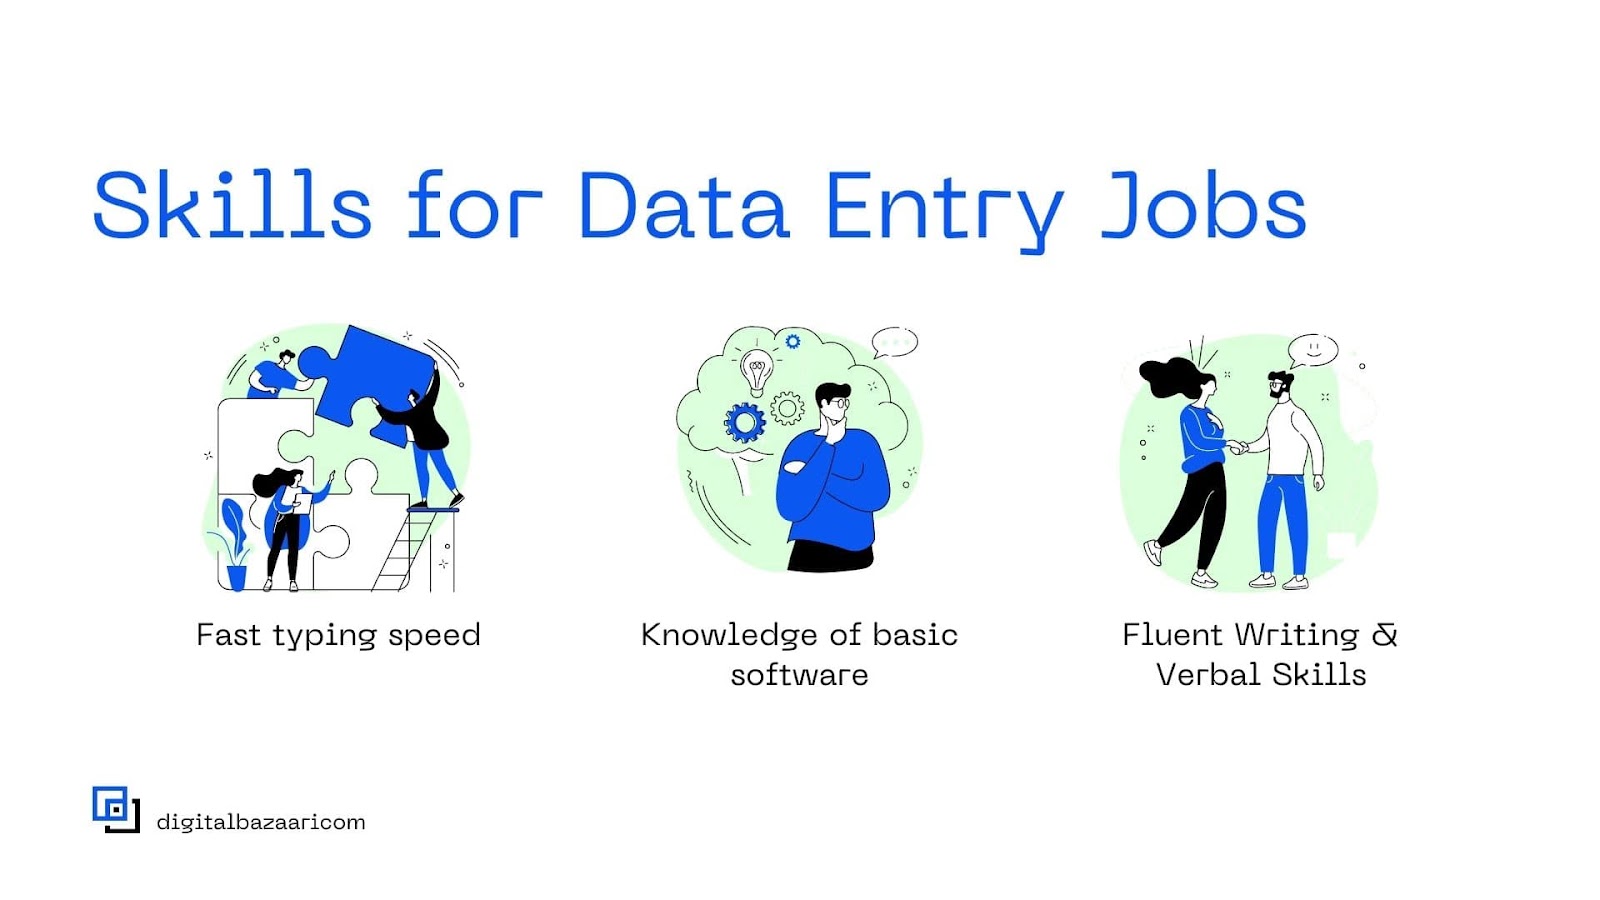 Skills for Data Entry Jobs